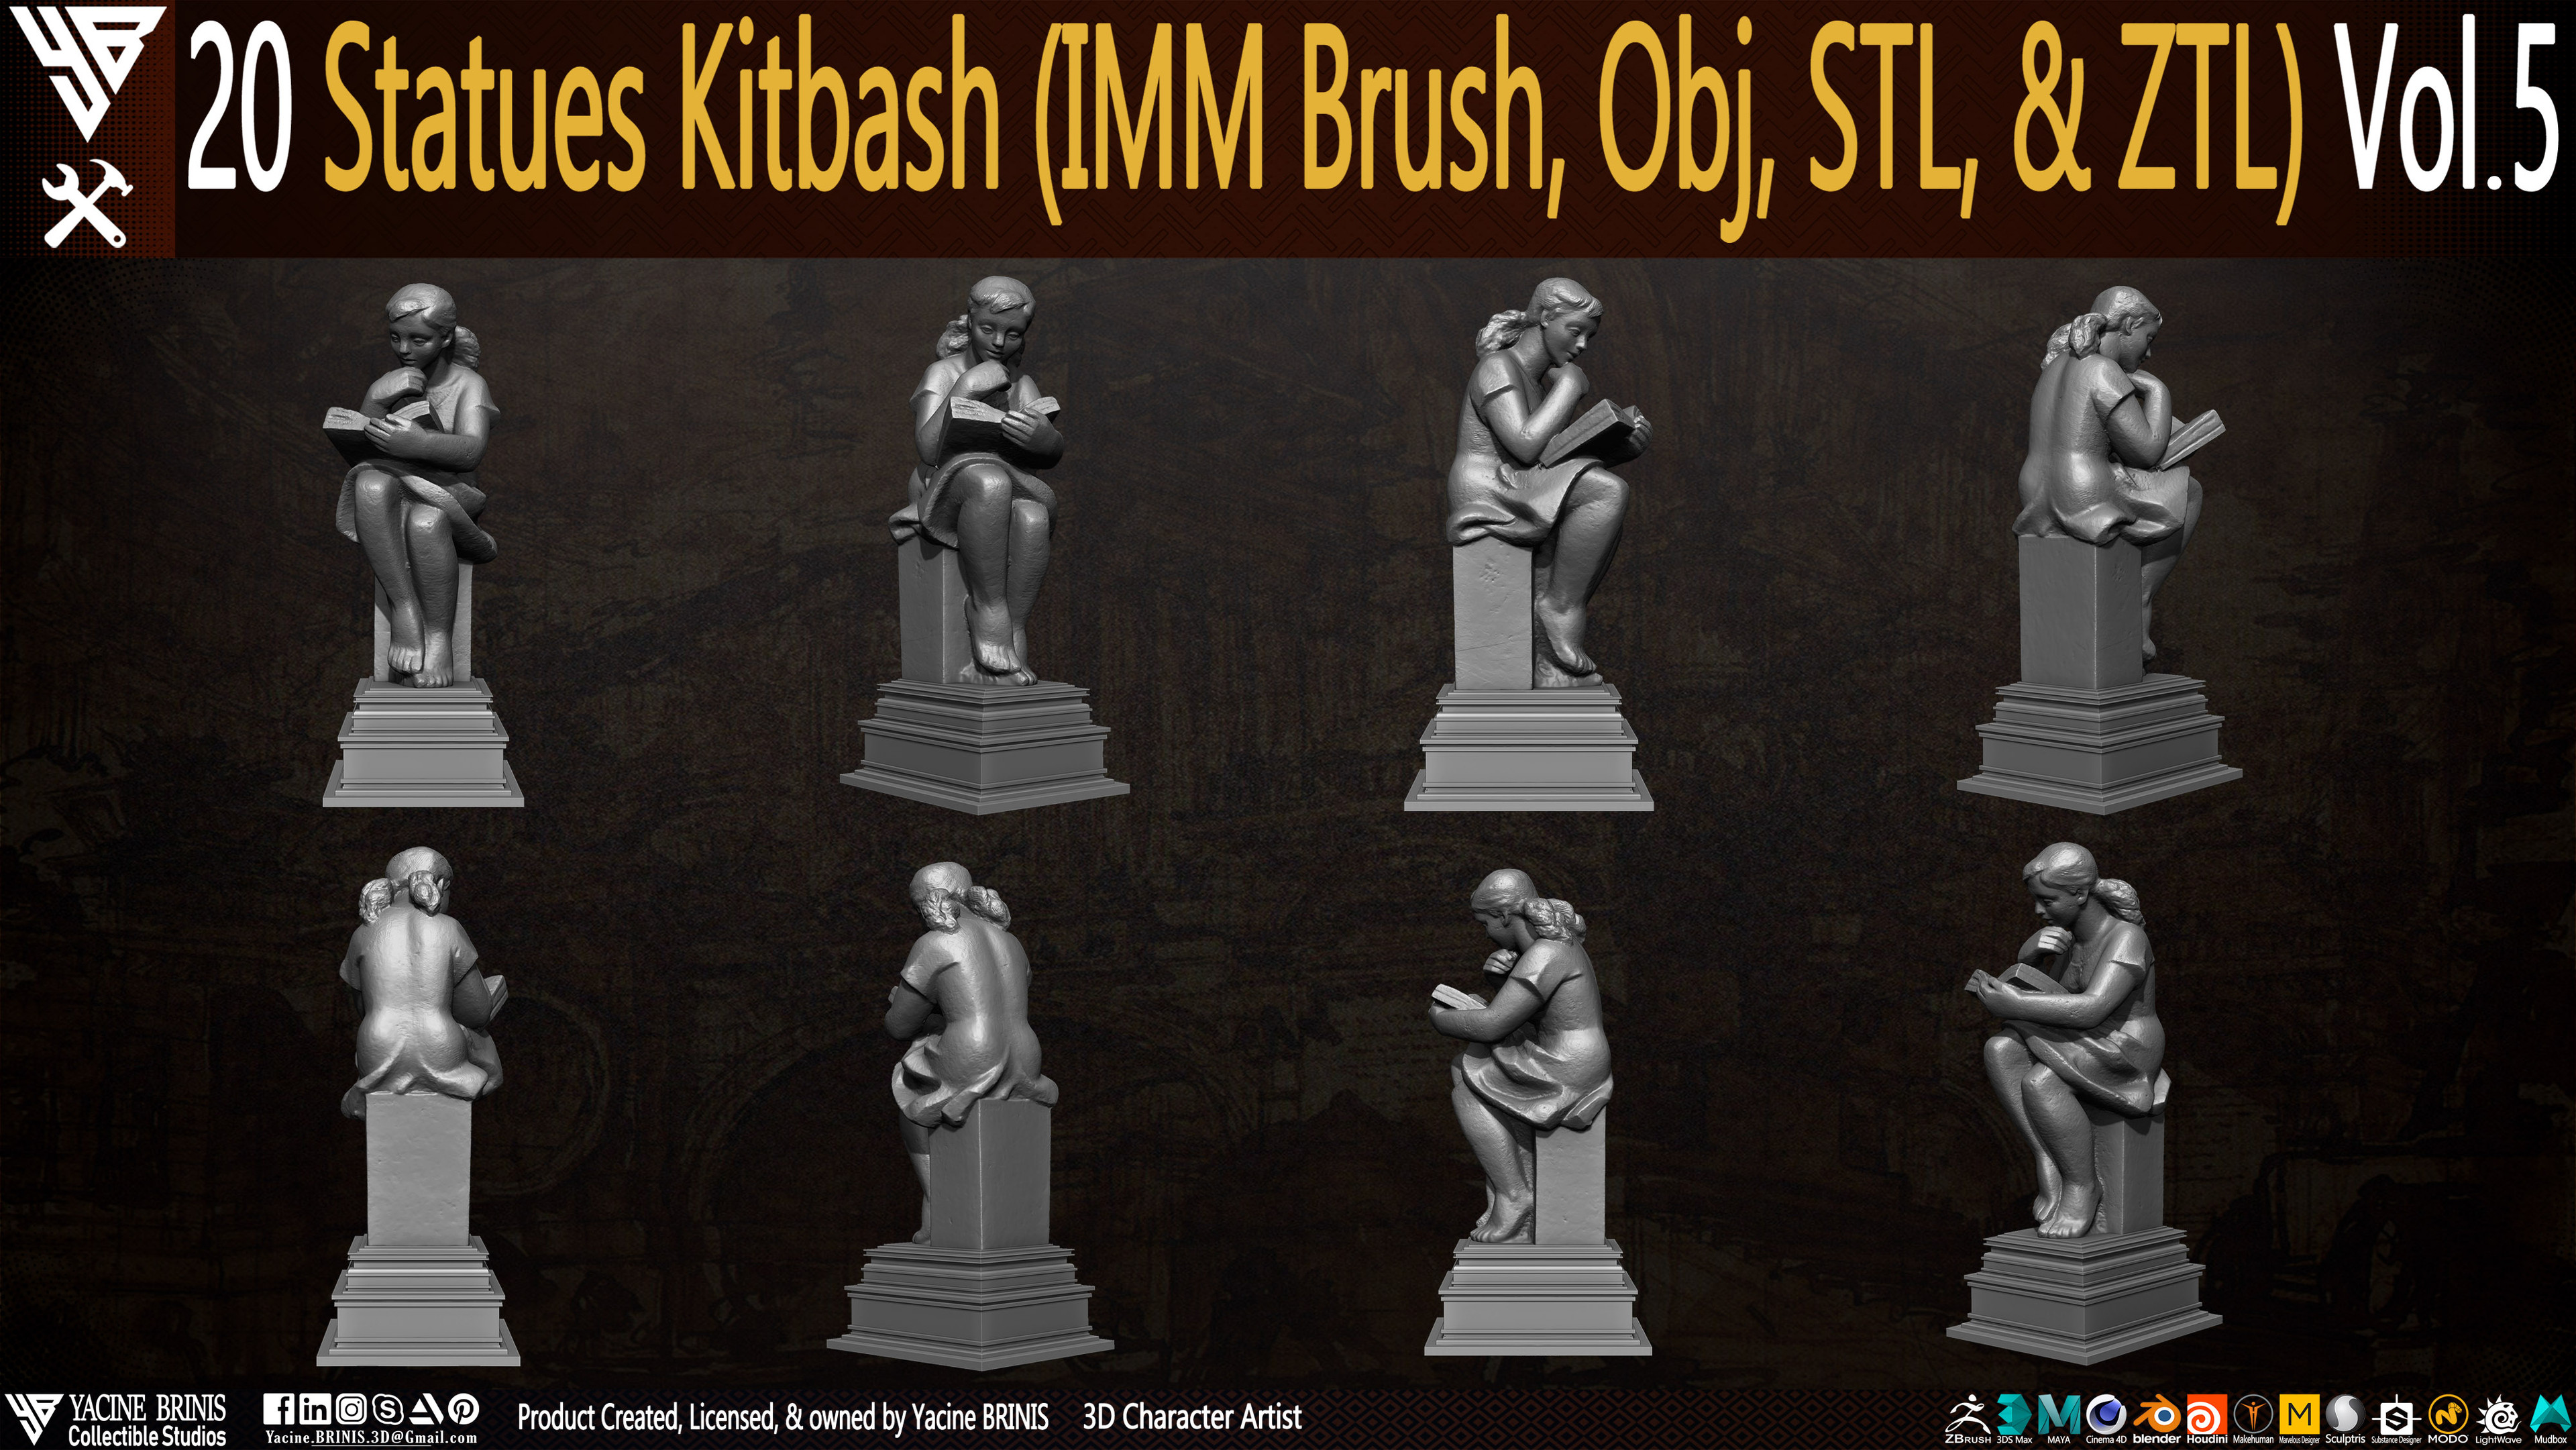 Statues Kitbash by yacine brinis Set 32